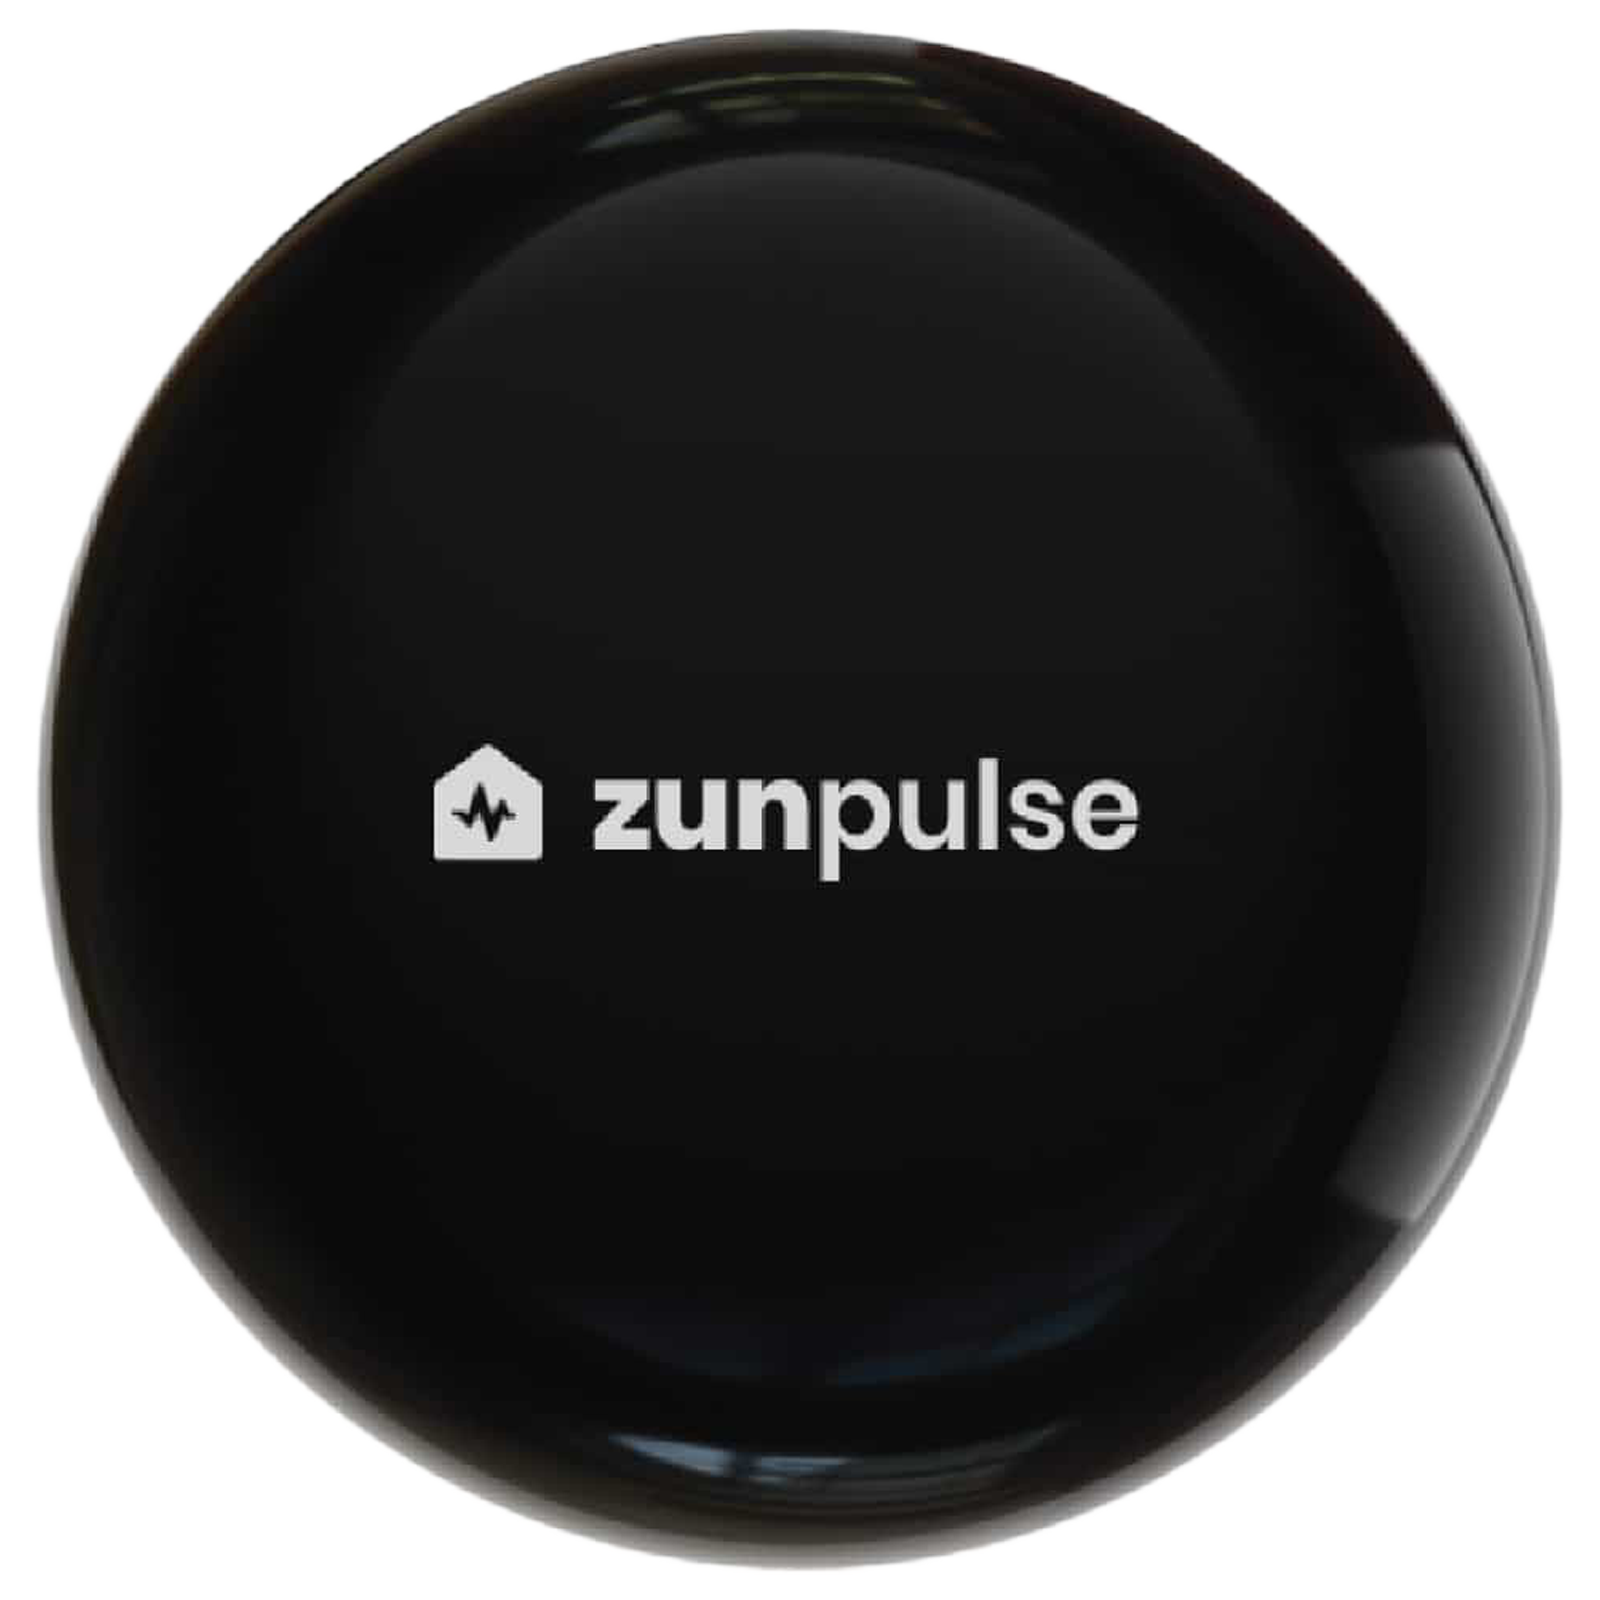 zunpulse Universal Smart Remote Control For Television (Black)